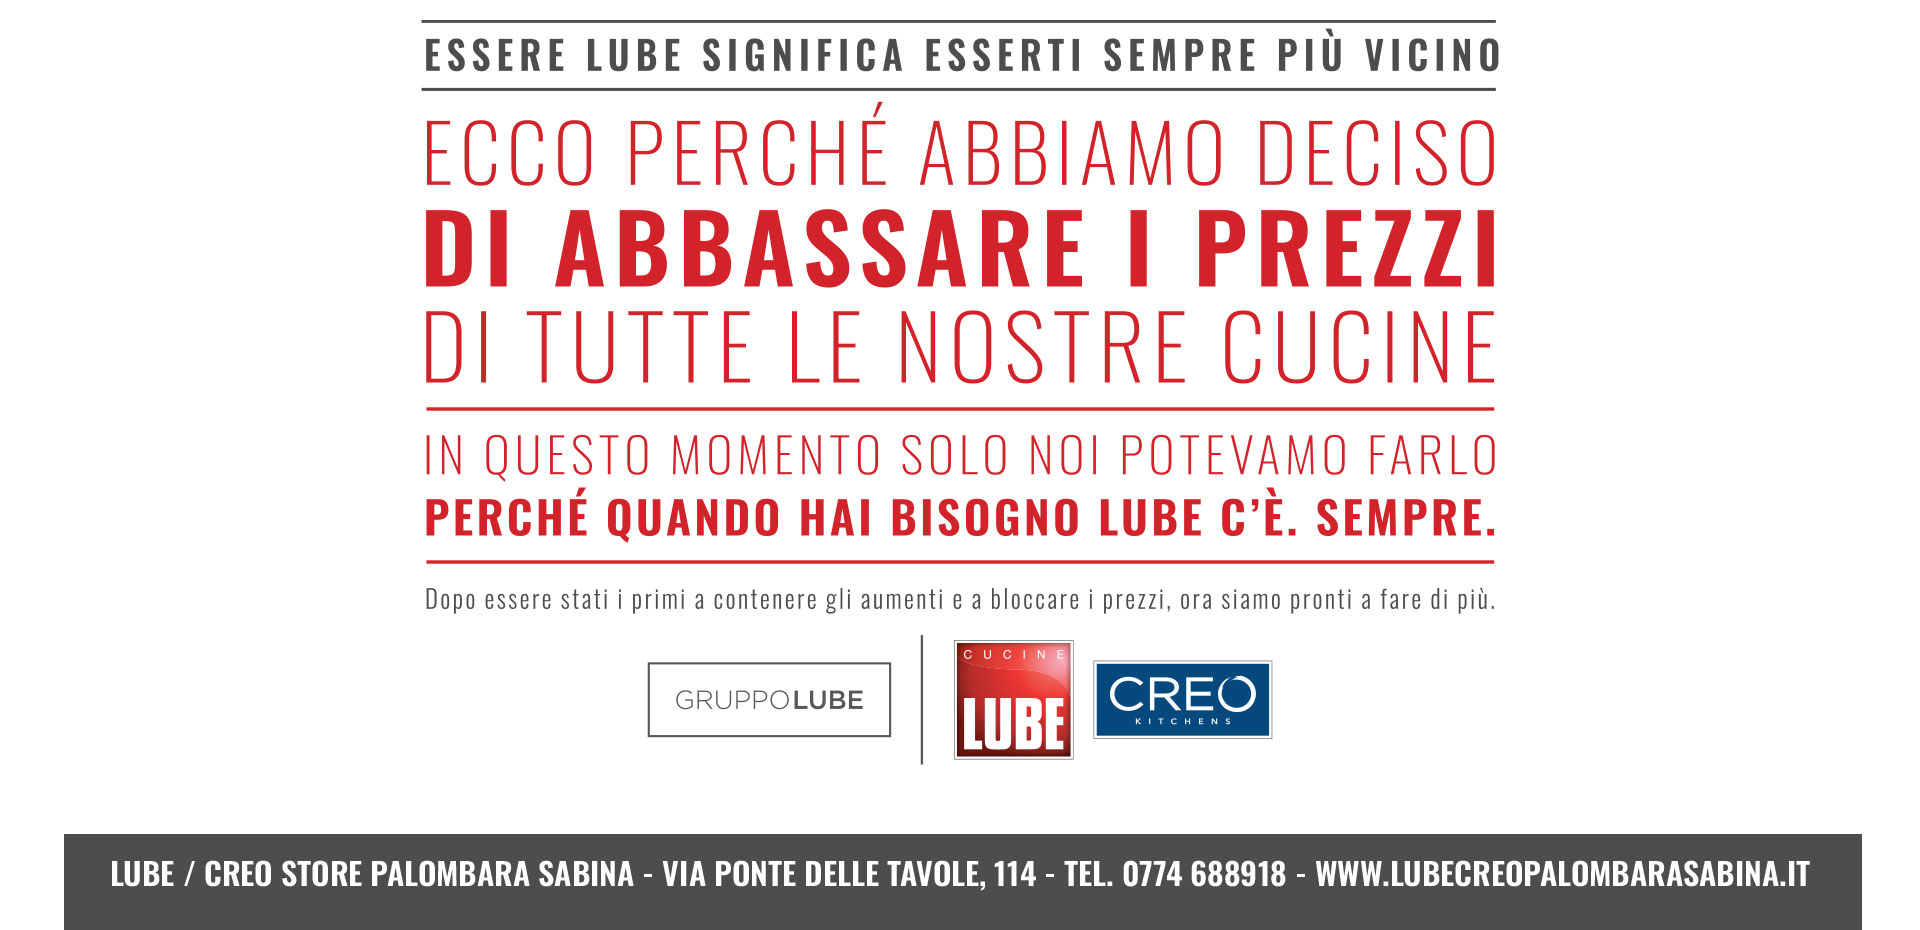 Abbiamo deciso di abbassare i prezzi! Approfitta della promozione Cucine LUBE e CREO Kitchens fino al 31 marzo! - LUBE CREO Palombara Sabina (Roma)